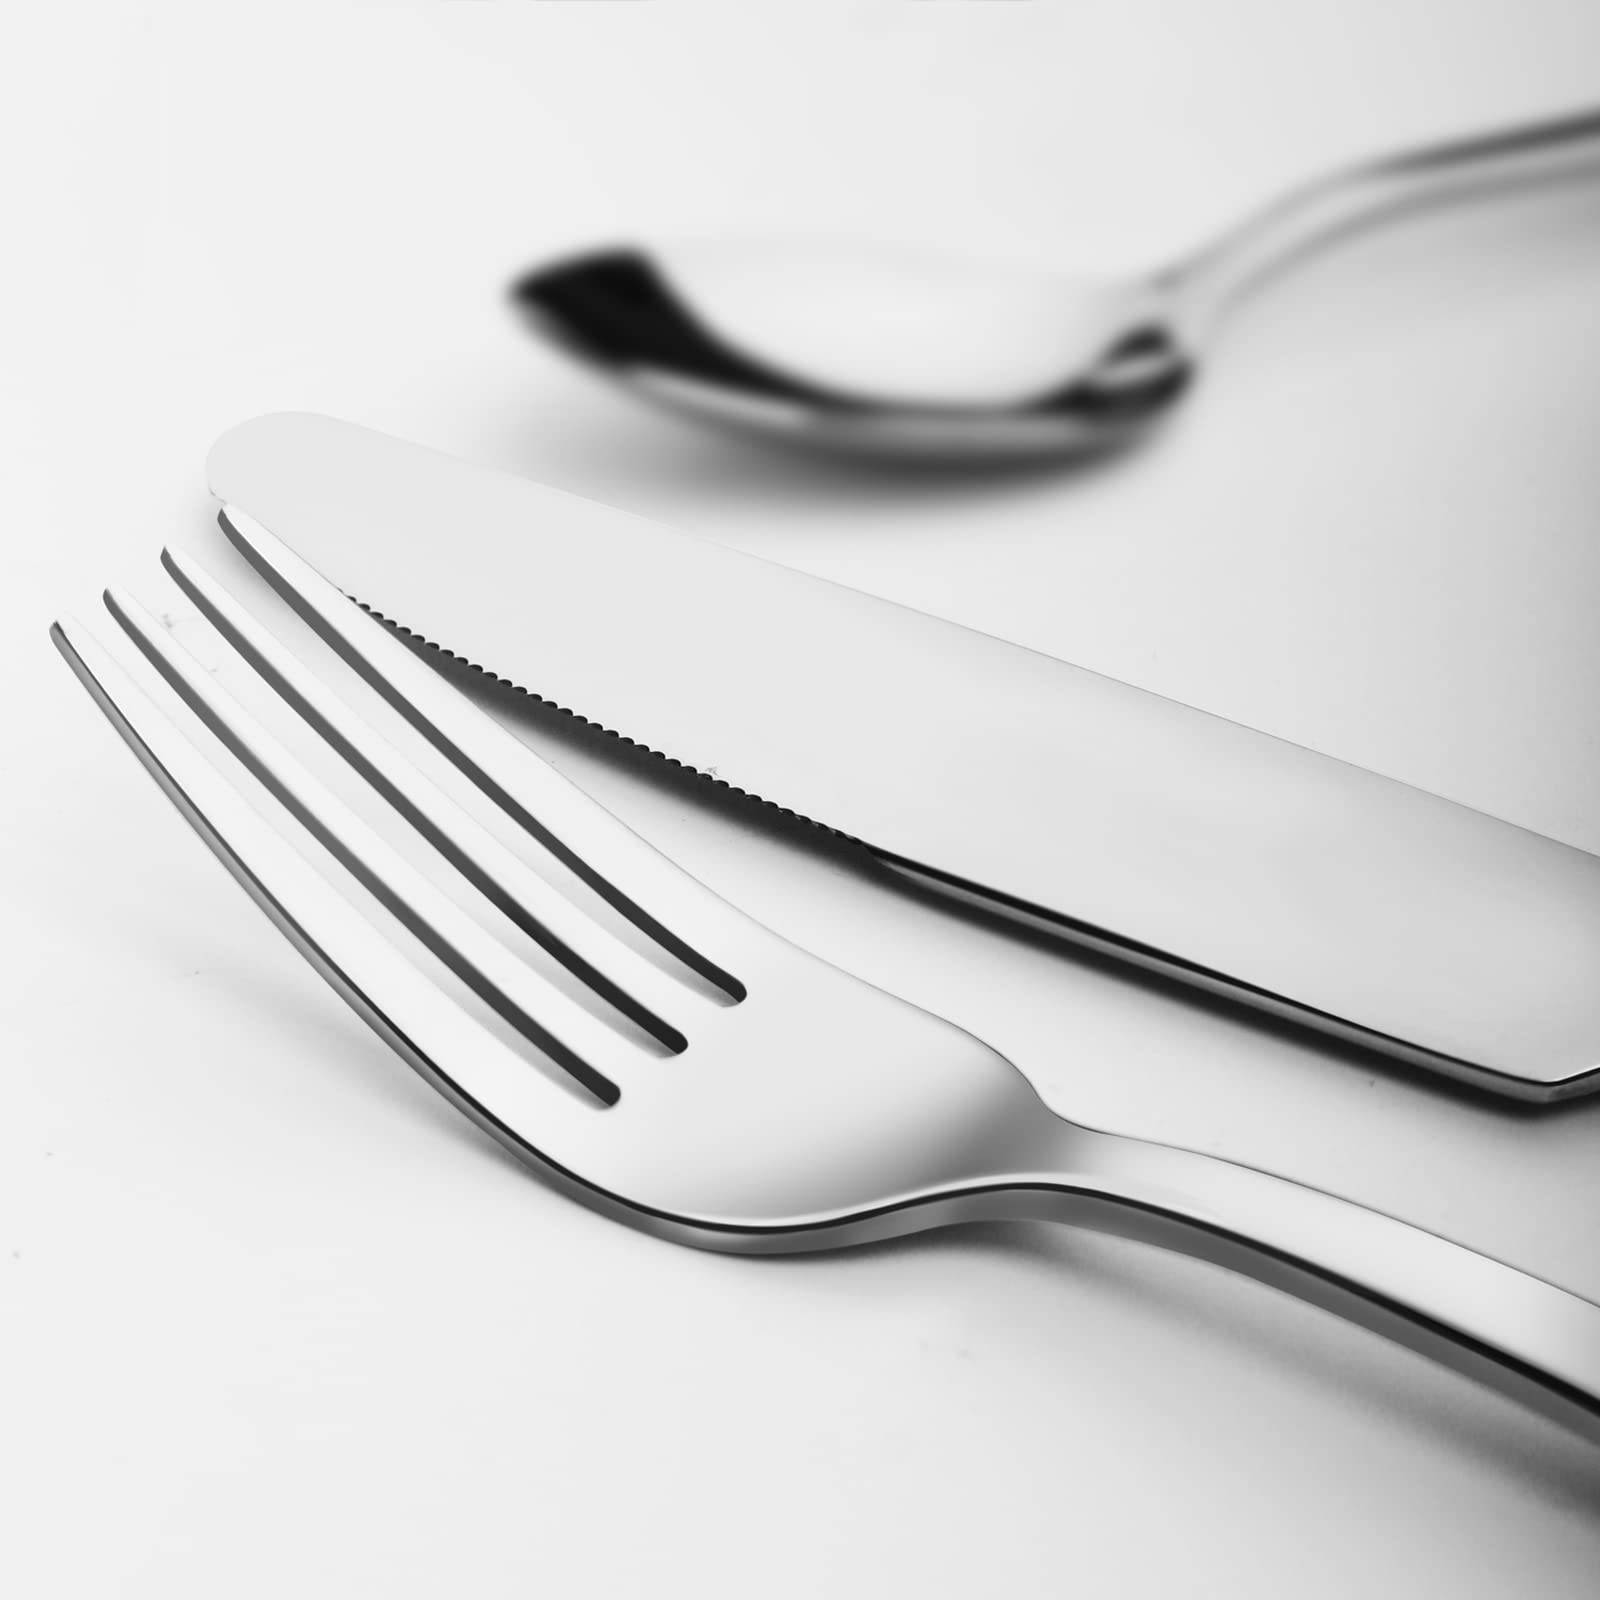 KINGSTONE Dinner Forks Set of 16, 8-Inch 18/10 Stainless Steel Forks Cutlery Silverware Forks for Home, Kitchen & Restaurant, Dishwasher Safe (Dinner Forks Set, 16-Piece)